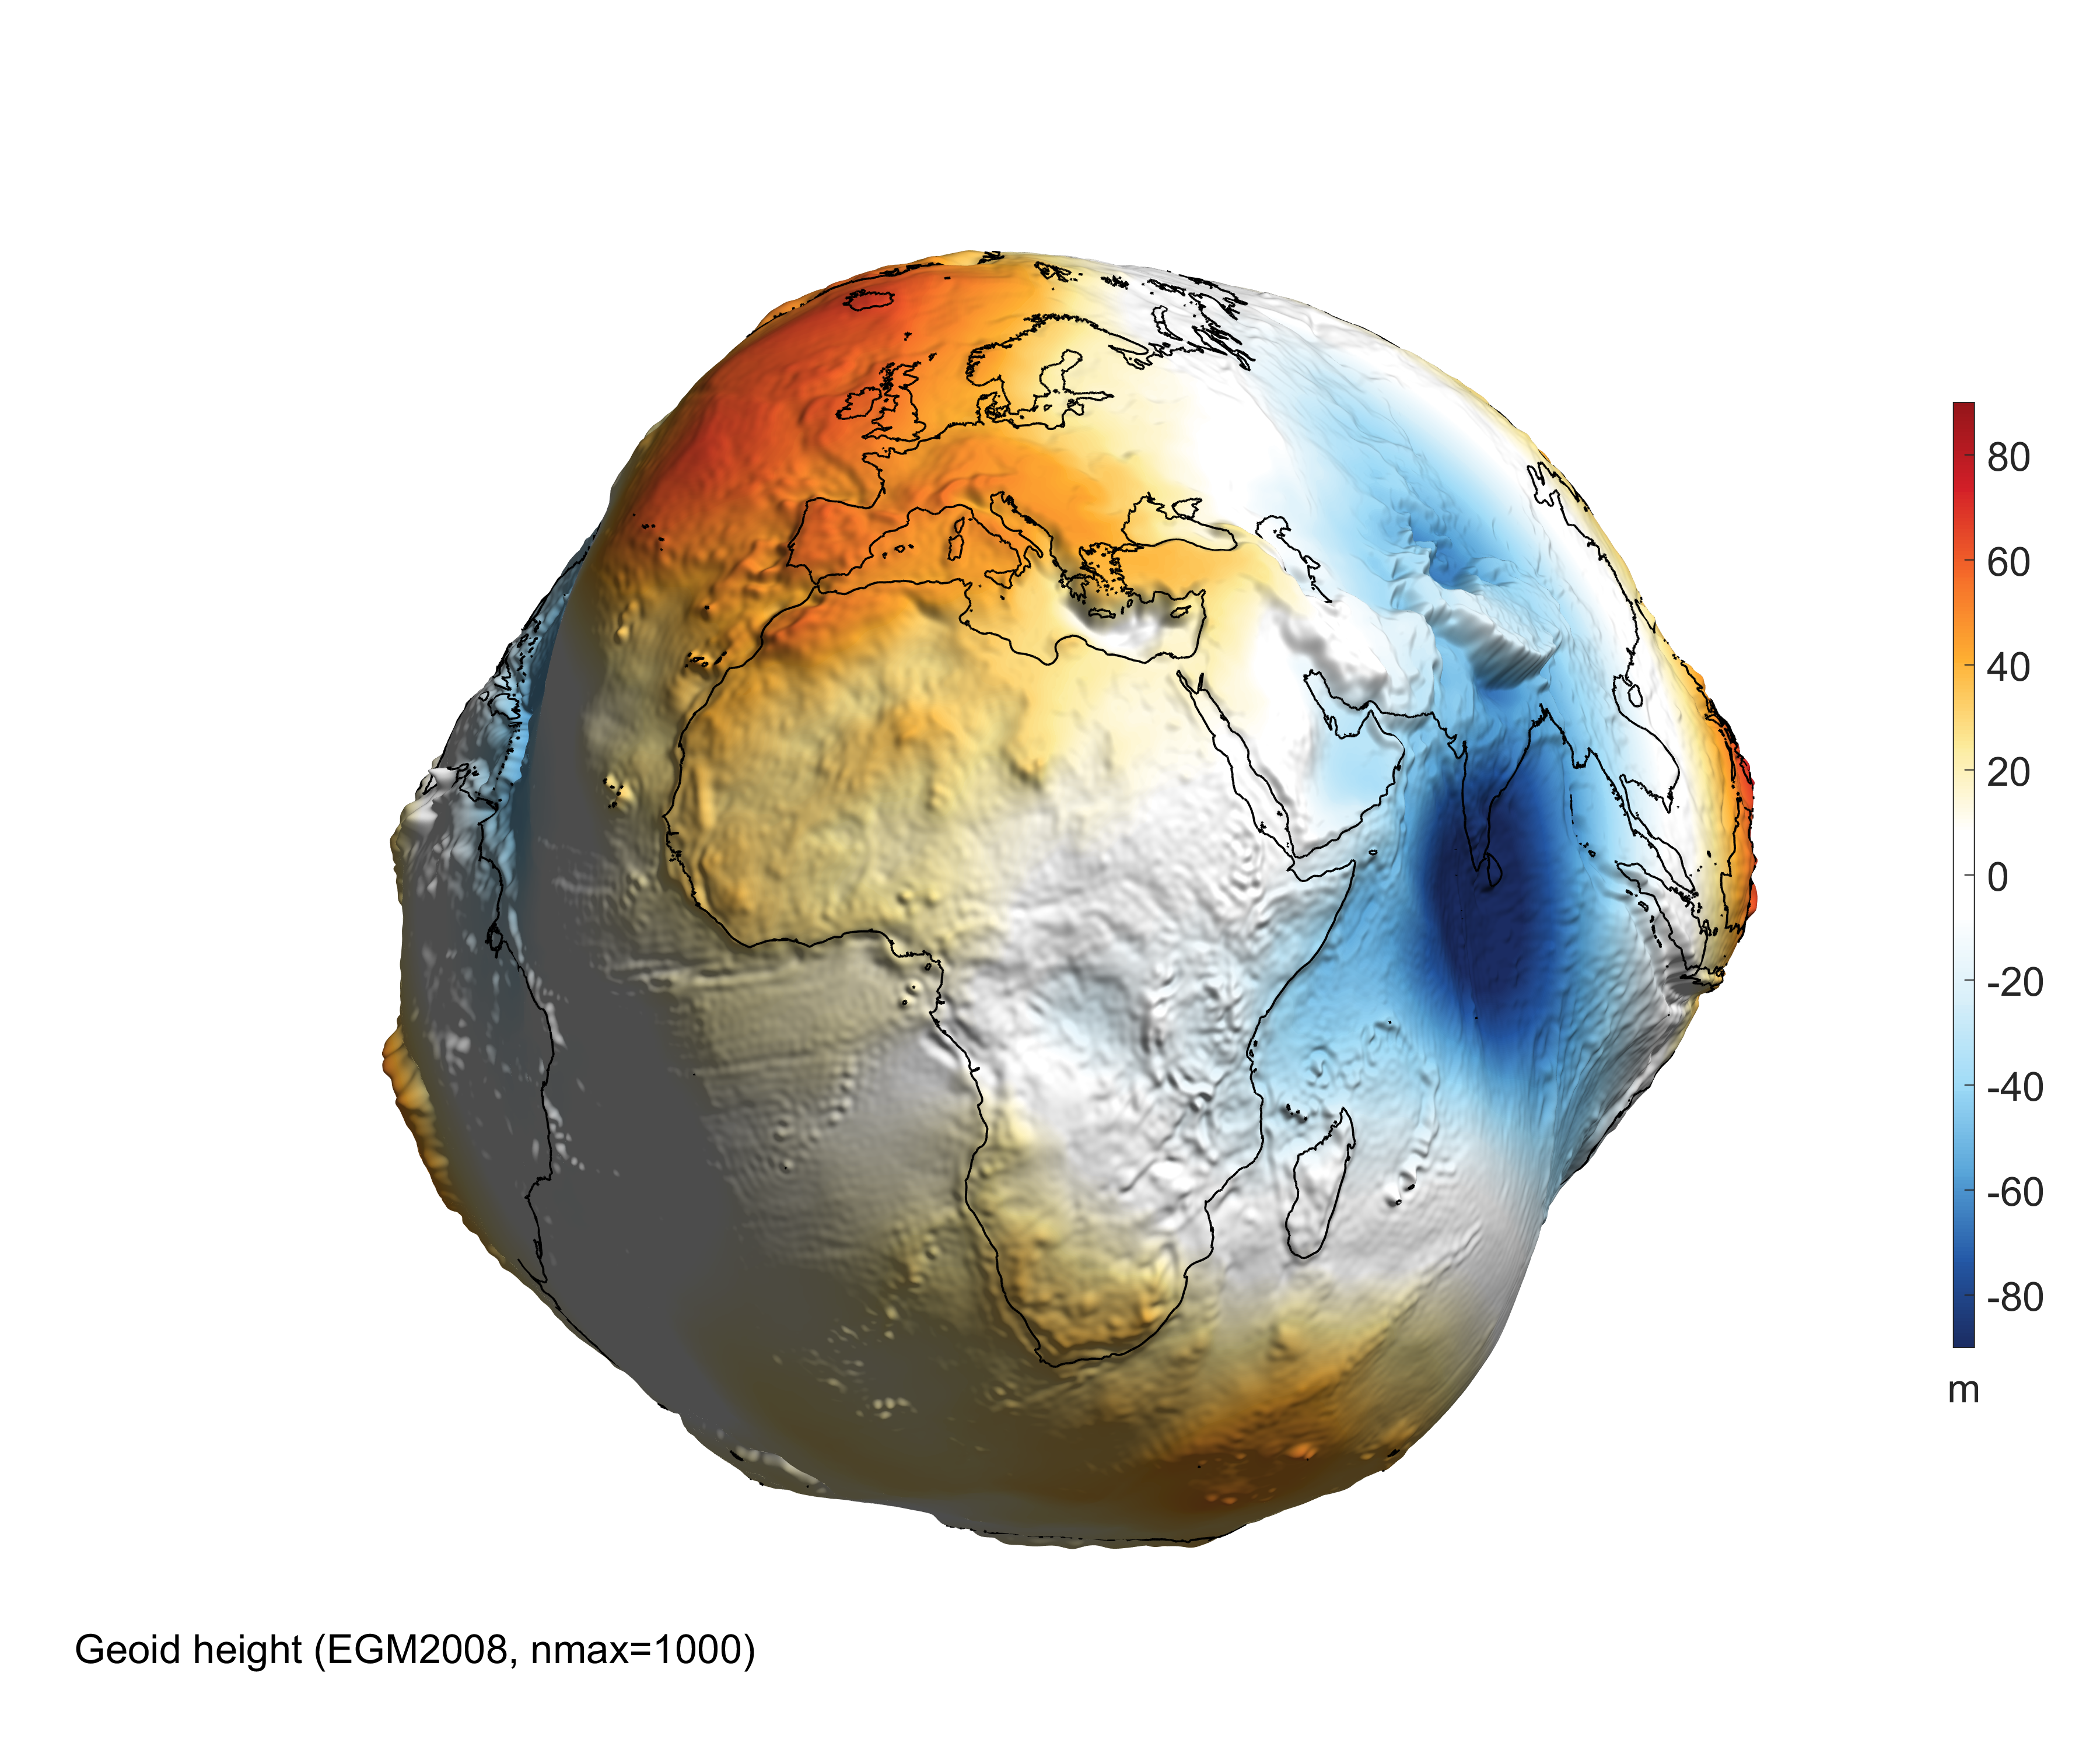 Dünya | Uzaydan Haberler'nın geoid yüksekliği, kütleçekim bozukluğu ve kütleçekim meyili dikkate alınarak MATLAB'da modellenen 3 boyutlu Dünya gösterimi. (Görsel: Bezdek A, Sebera J, 2013)